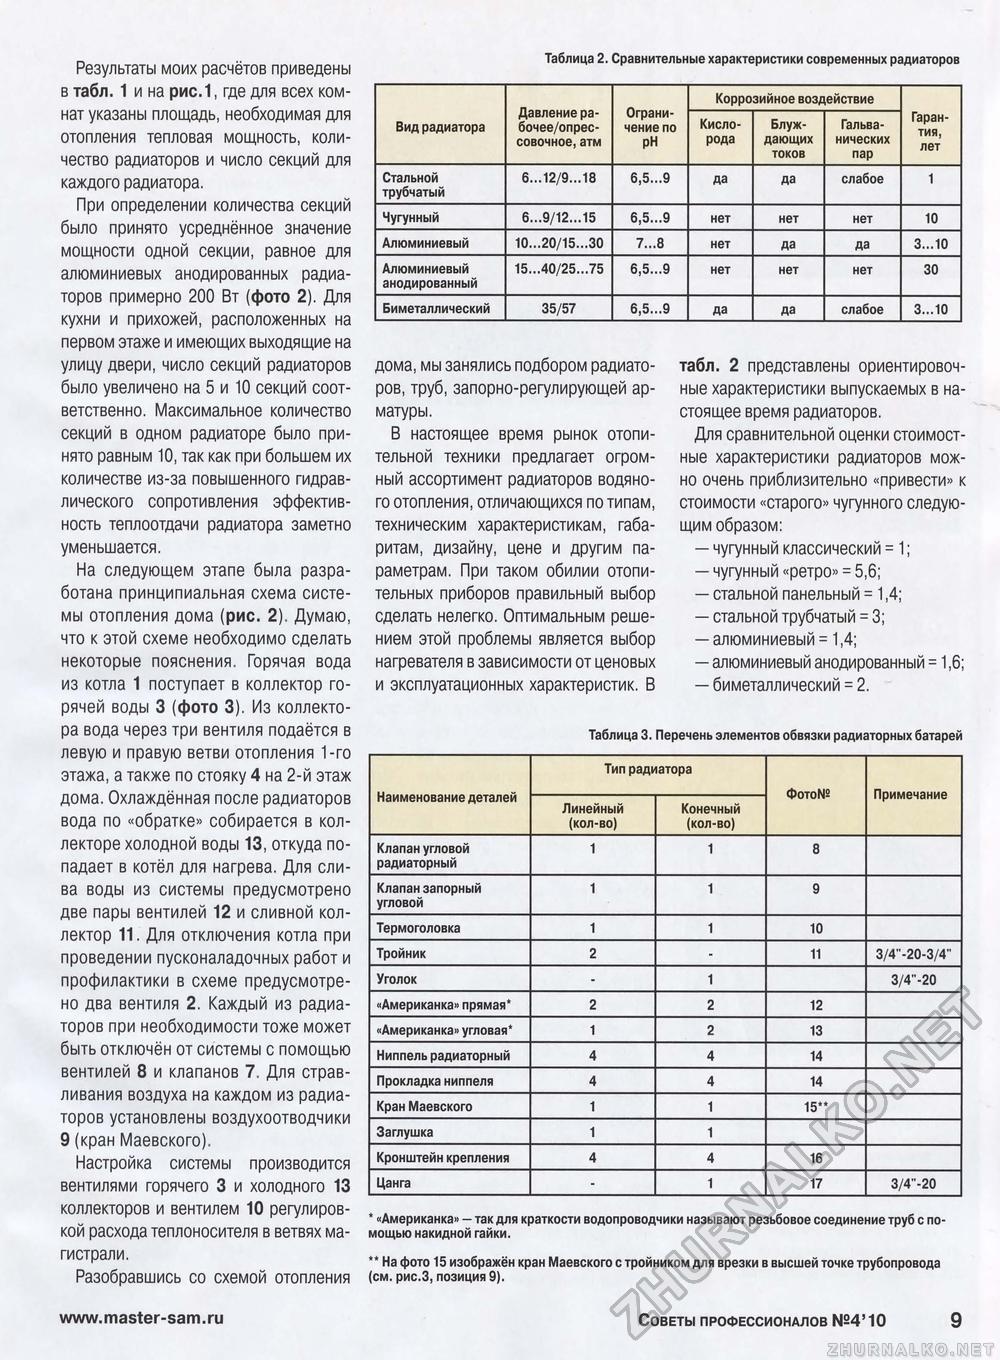 Советы профессионалов 2010-04, страница 9